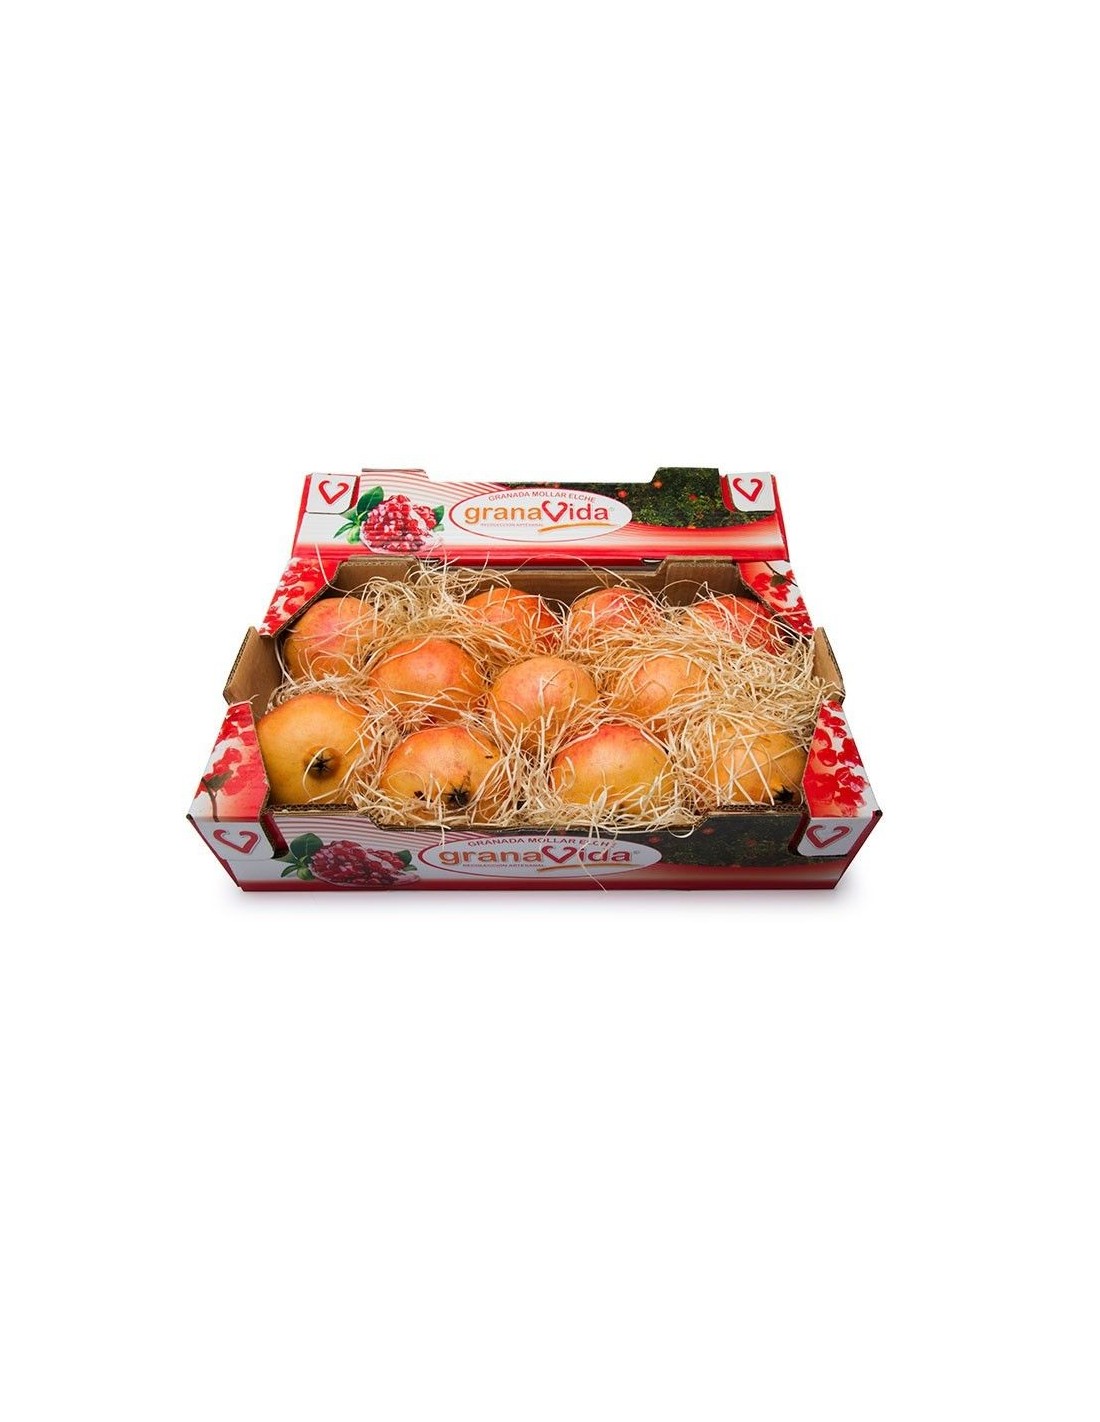 Naranjas de mesa en caja de 5 kg